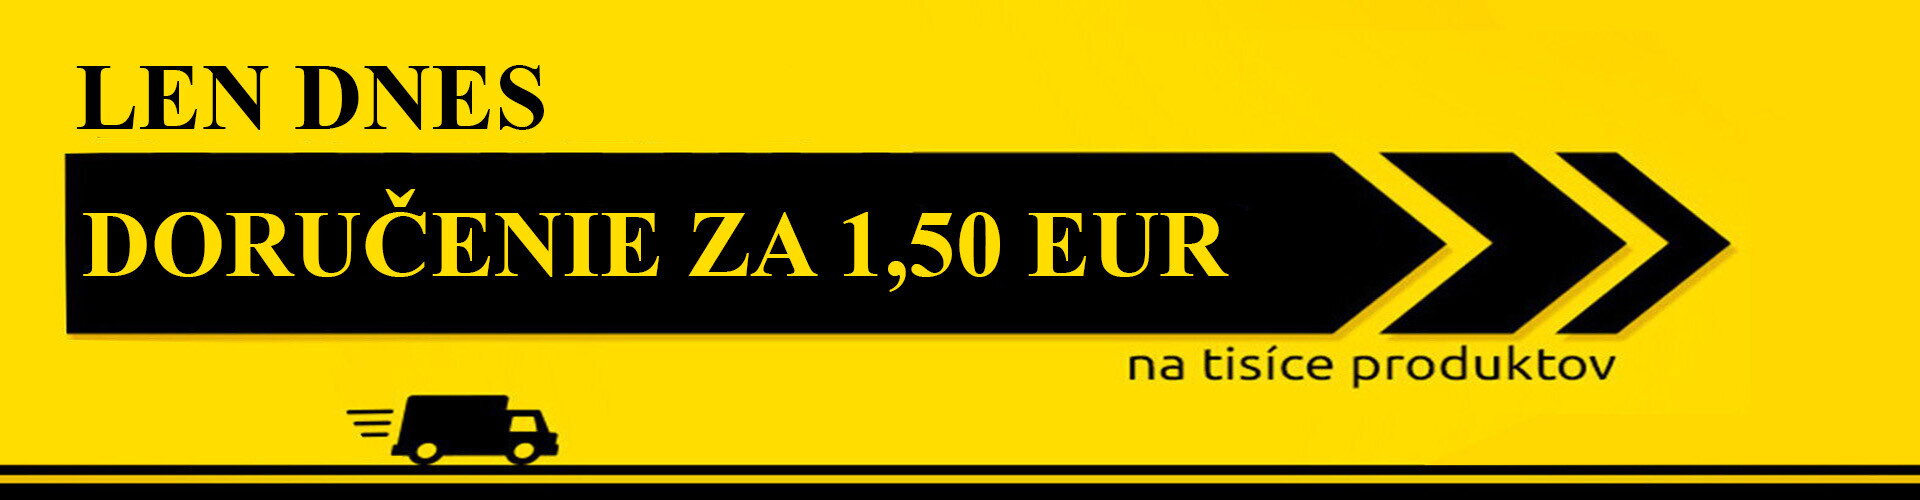 Len dnes doručenie 1,50 Eur